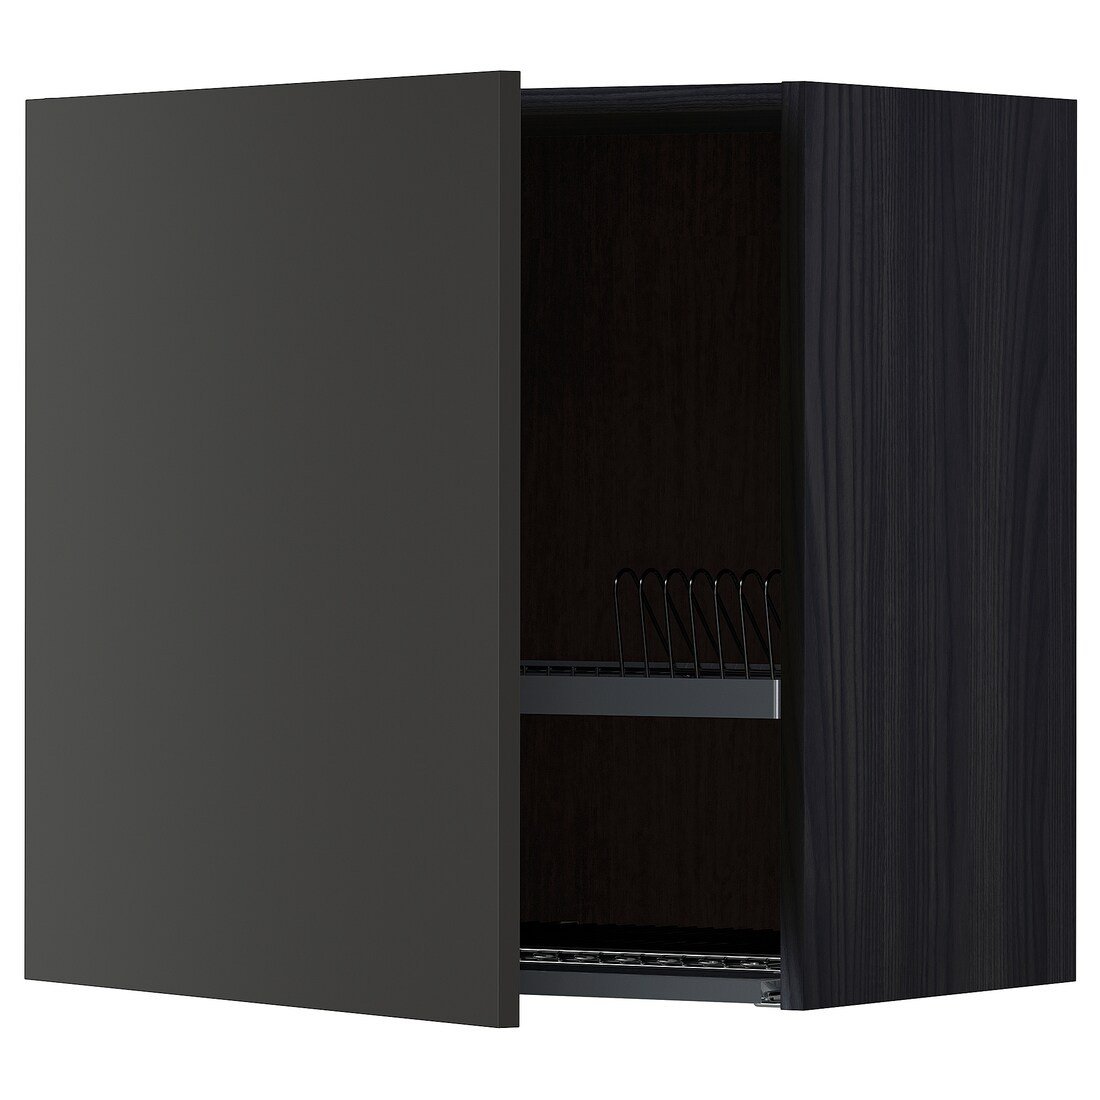 METOD МЕТОД Навесной шкаф с сушилкой, черный / Nickebo матовый антрацит, 60x60 см